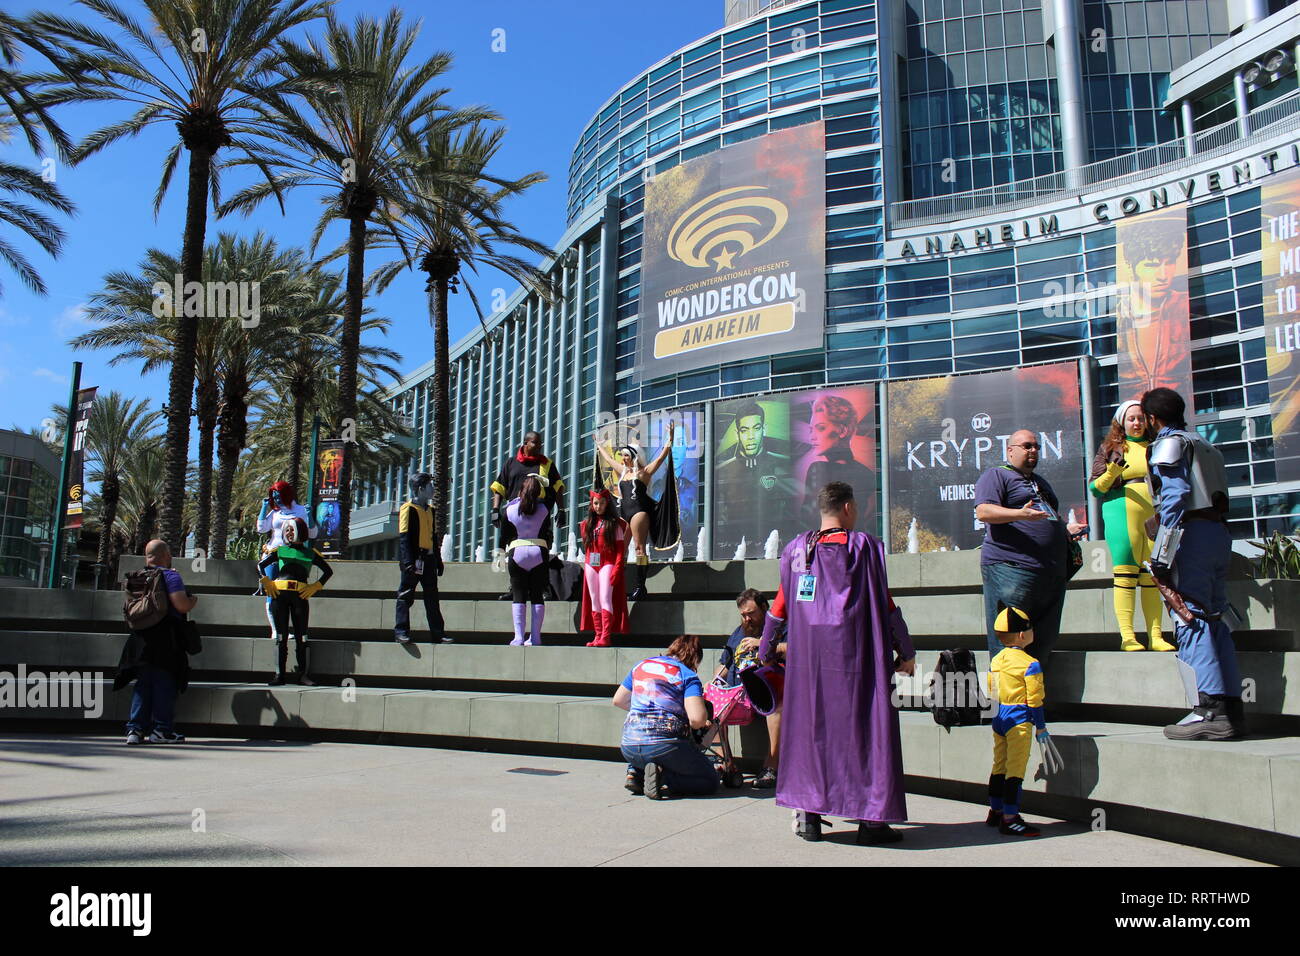 Los asistentes de Wondercon pululando en sus trajes en frente del Anaheim Convention Center. Foto de stock